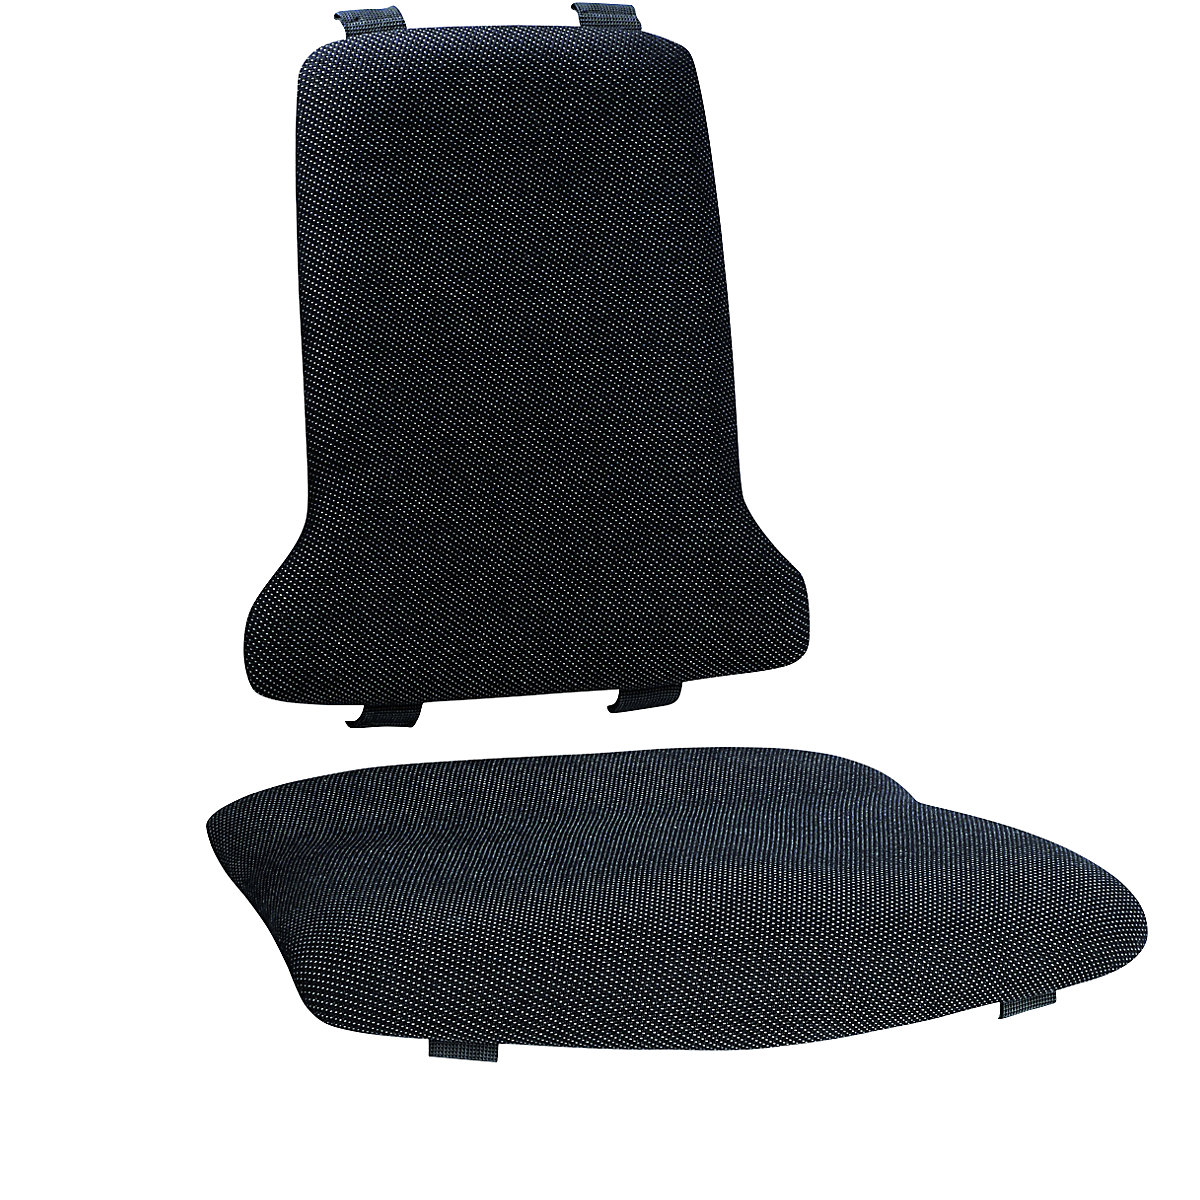 Polster bimos, ESD-Ausführung, je 1 Polster für Sitz und Rückenlehne, Textil-Polster, schwarz-2